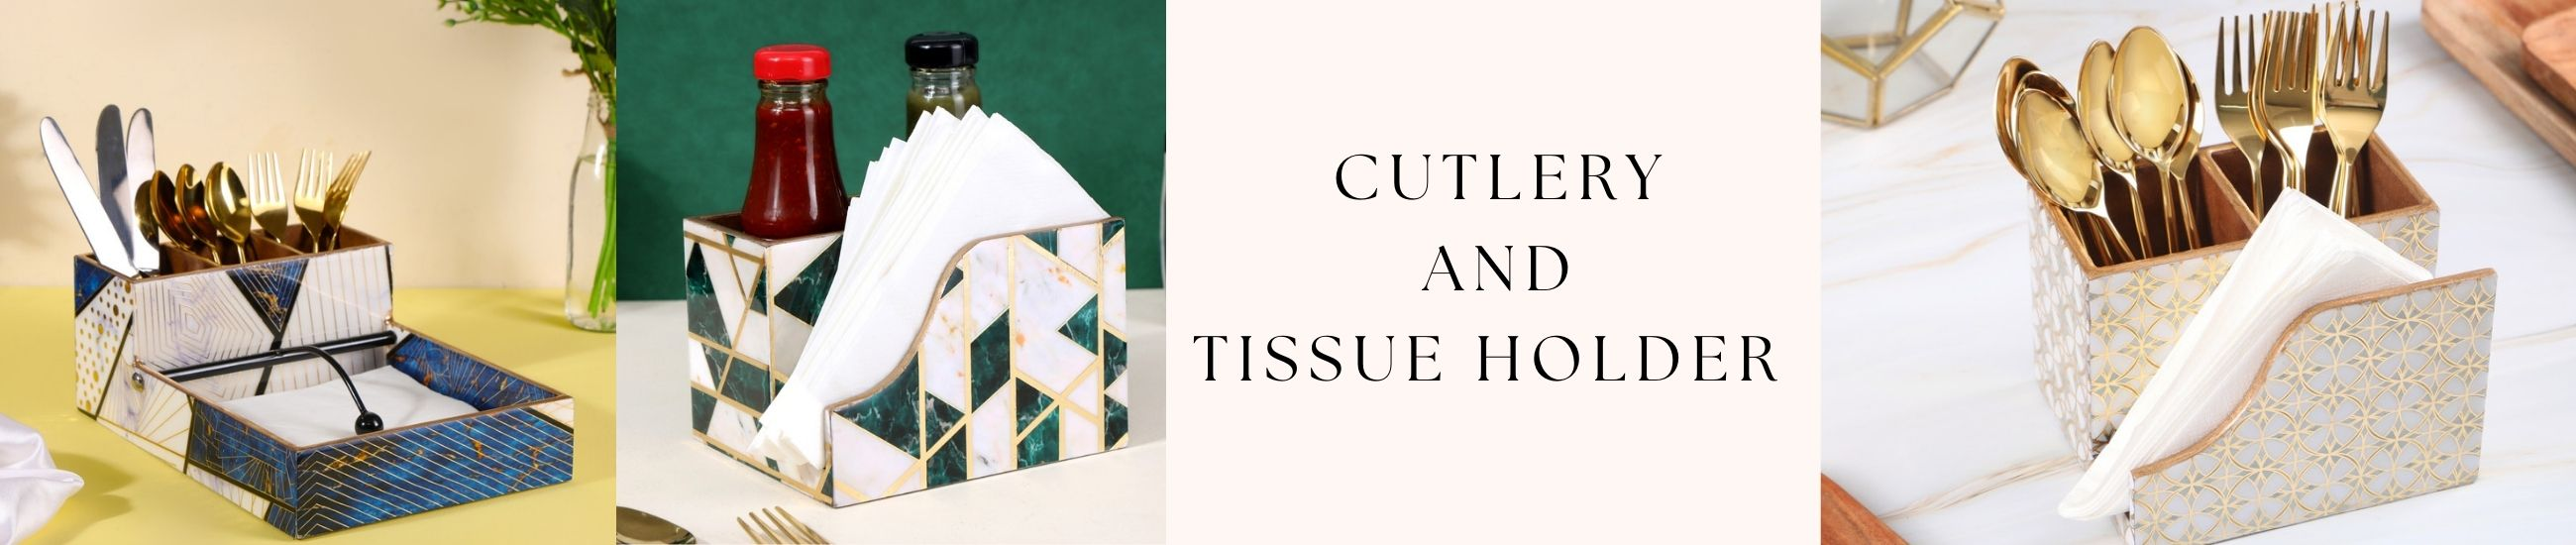 Cutlery Tissue Holder